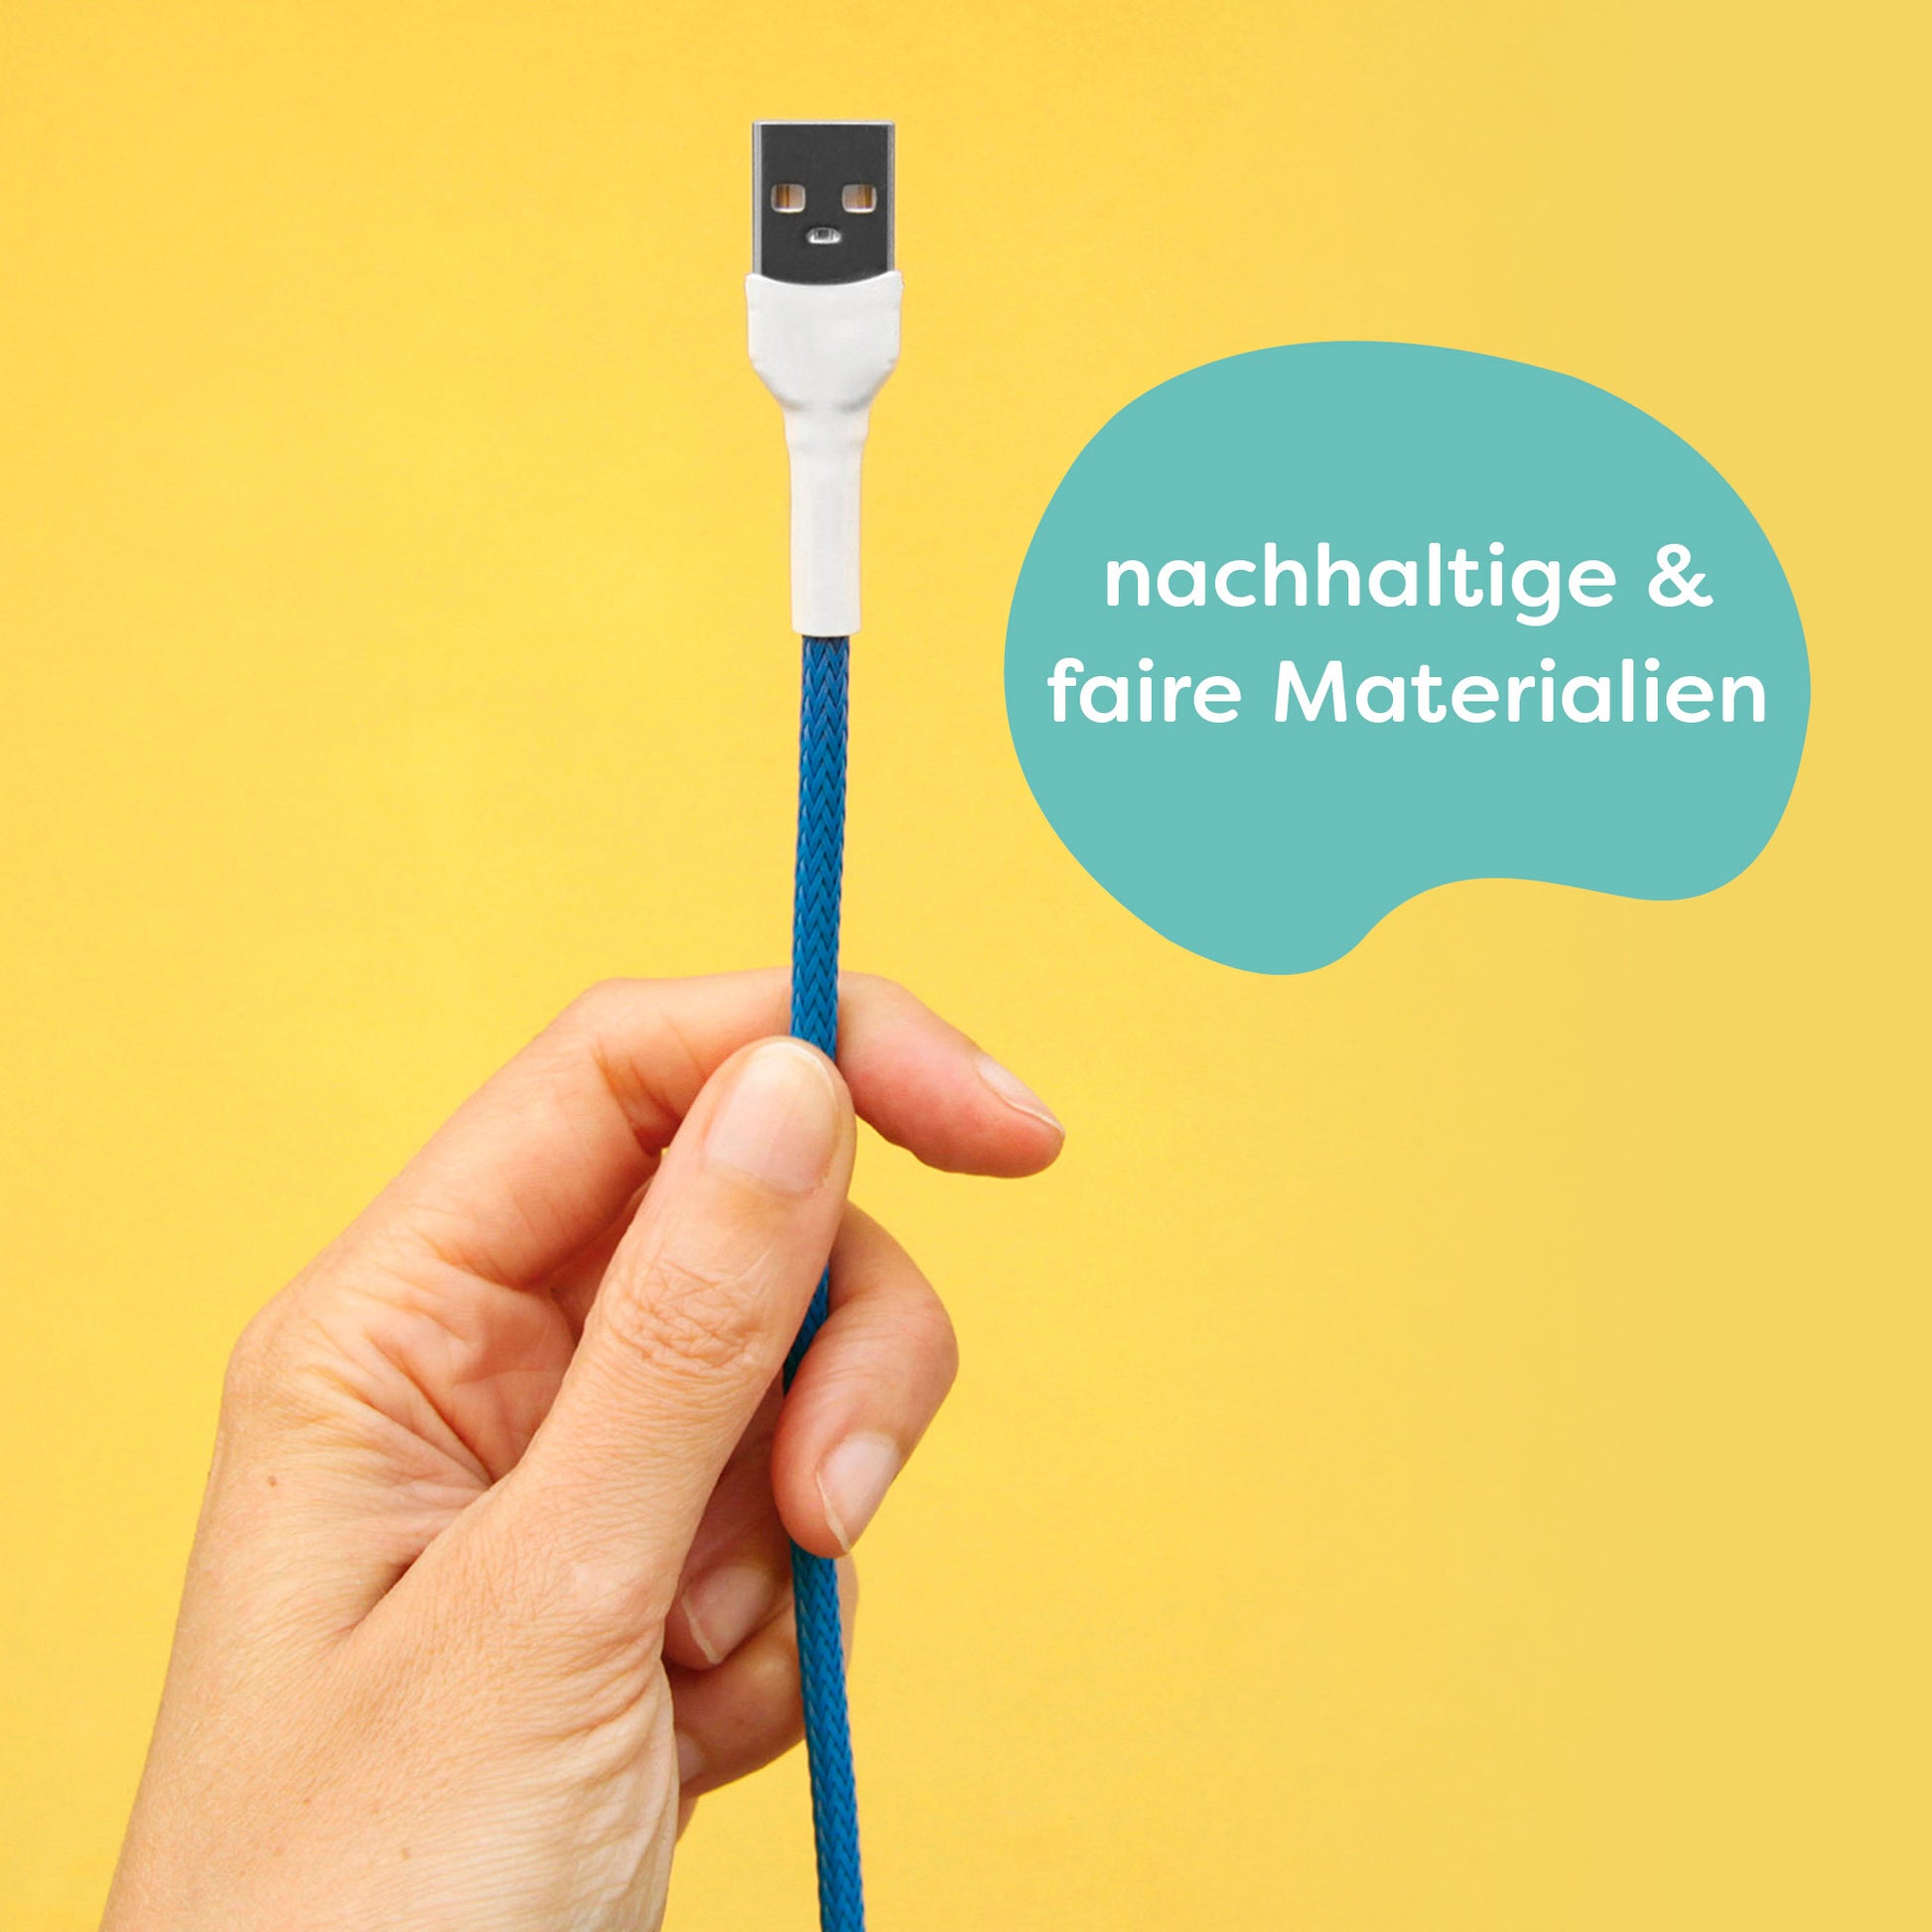 Für die Herstellung werden nachhaltige und faire Materialien verwendet. Darstellung: Es wird ein recable mitsamt eines USB-A-Anschlusses in den Farben blau und weiß gezeigt.